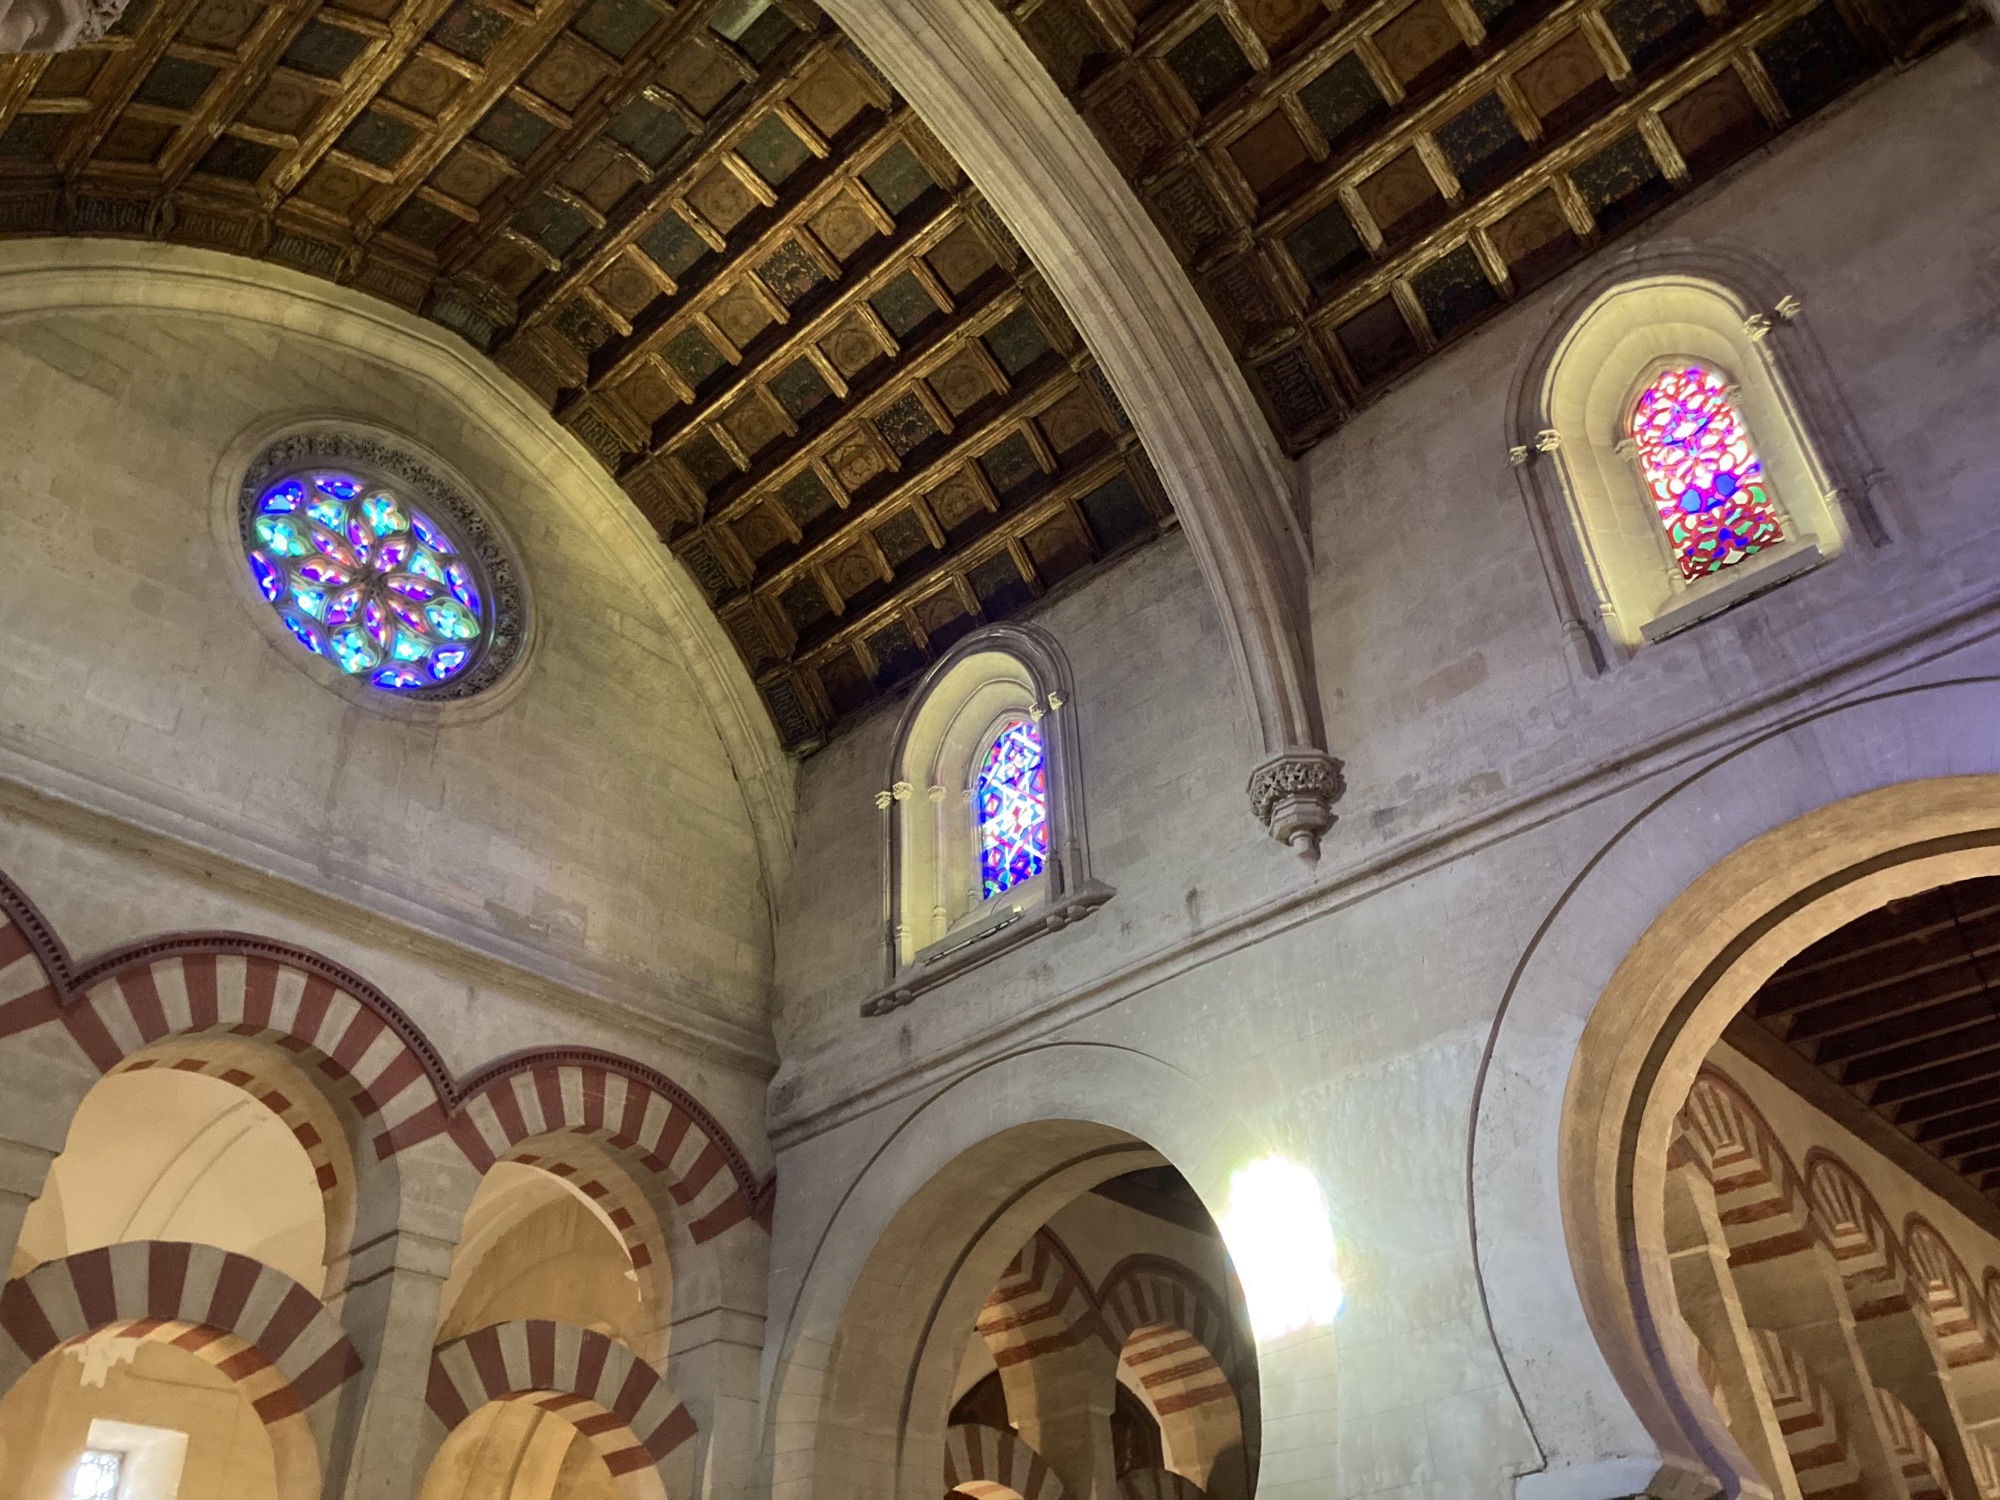 Architekturdetails in der Moschee-Kathedrale, bunte Mosaikglasfenster, durch die Licht herein scheint, die Holzdecke besteht aus quadratischen Einzelteilen, darunter mit Bogenverbindungen gekrönte Säulen